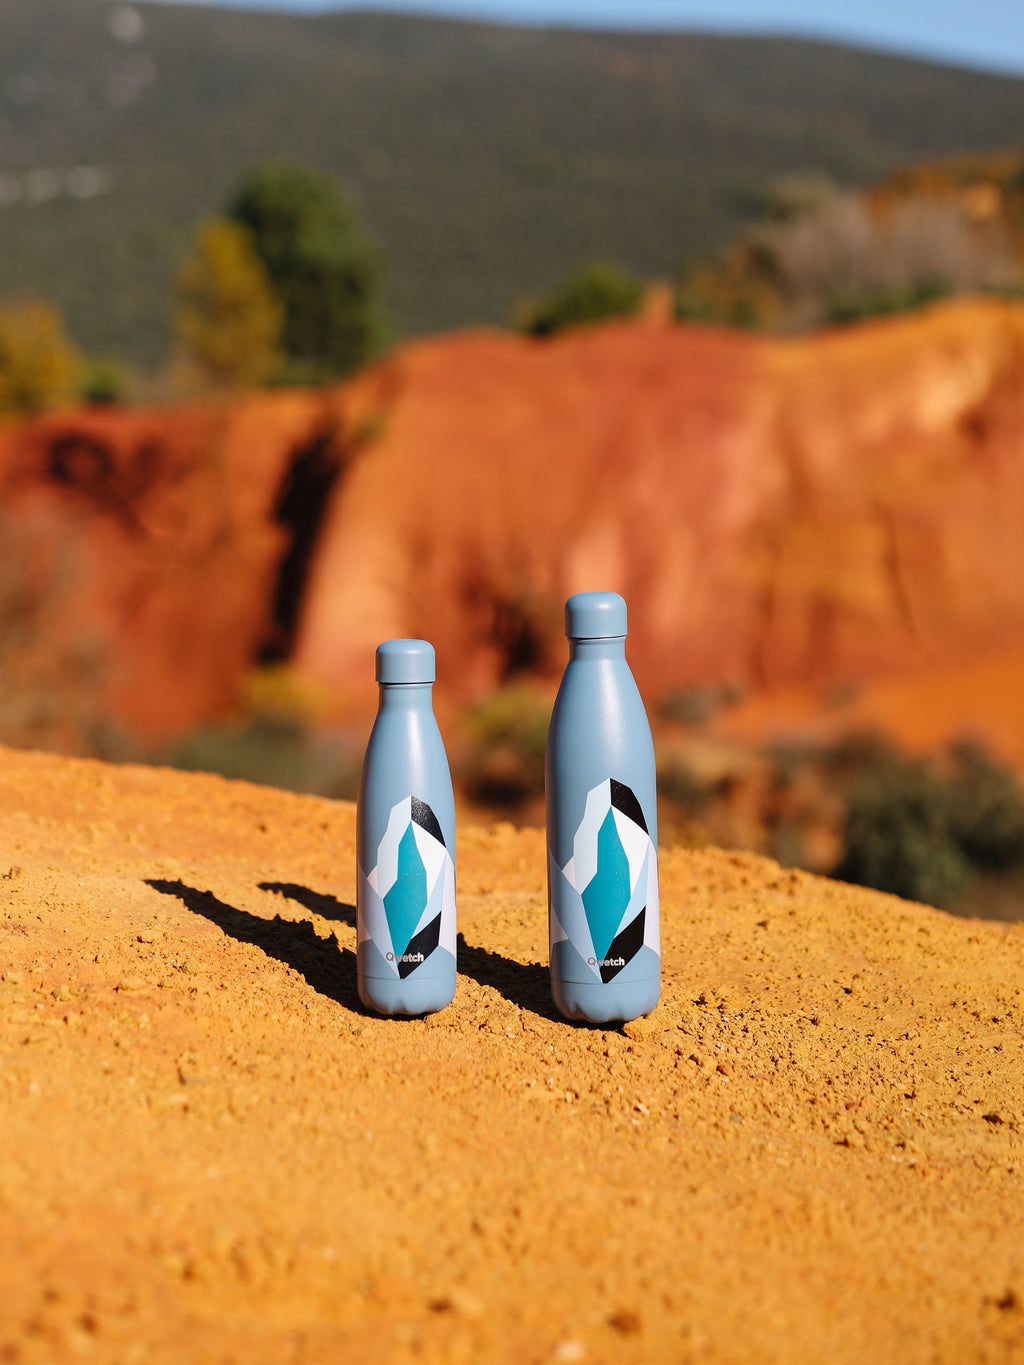 Insulated bottle - Originals Altitude Denim blue